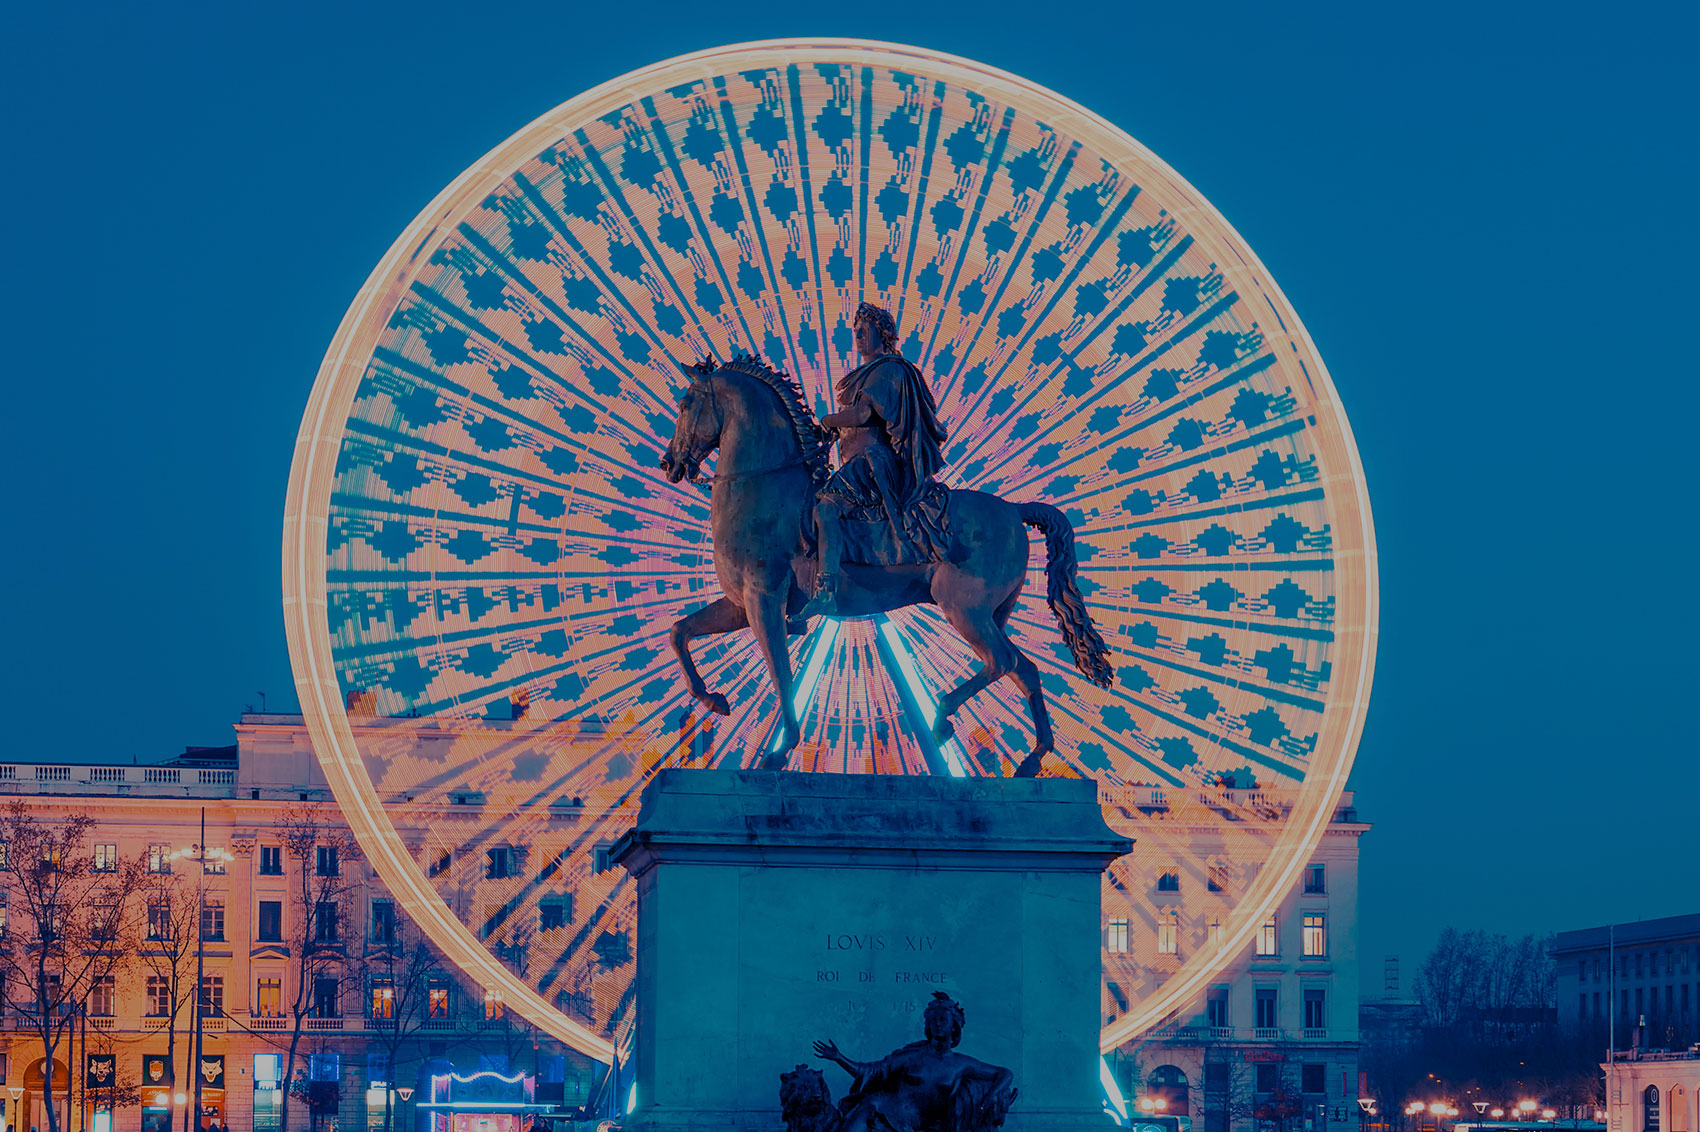 photo de la place Bellecour à lyon montrant la grande roue avec la statue d'un cavalier au premier plan